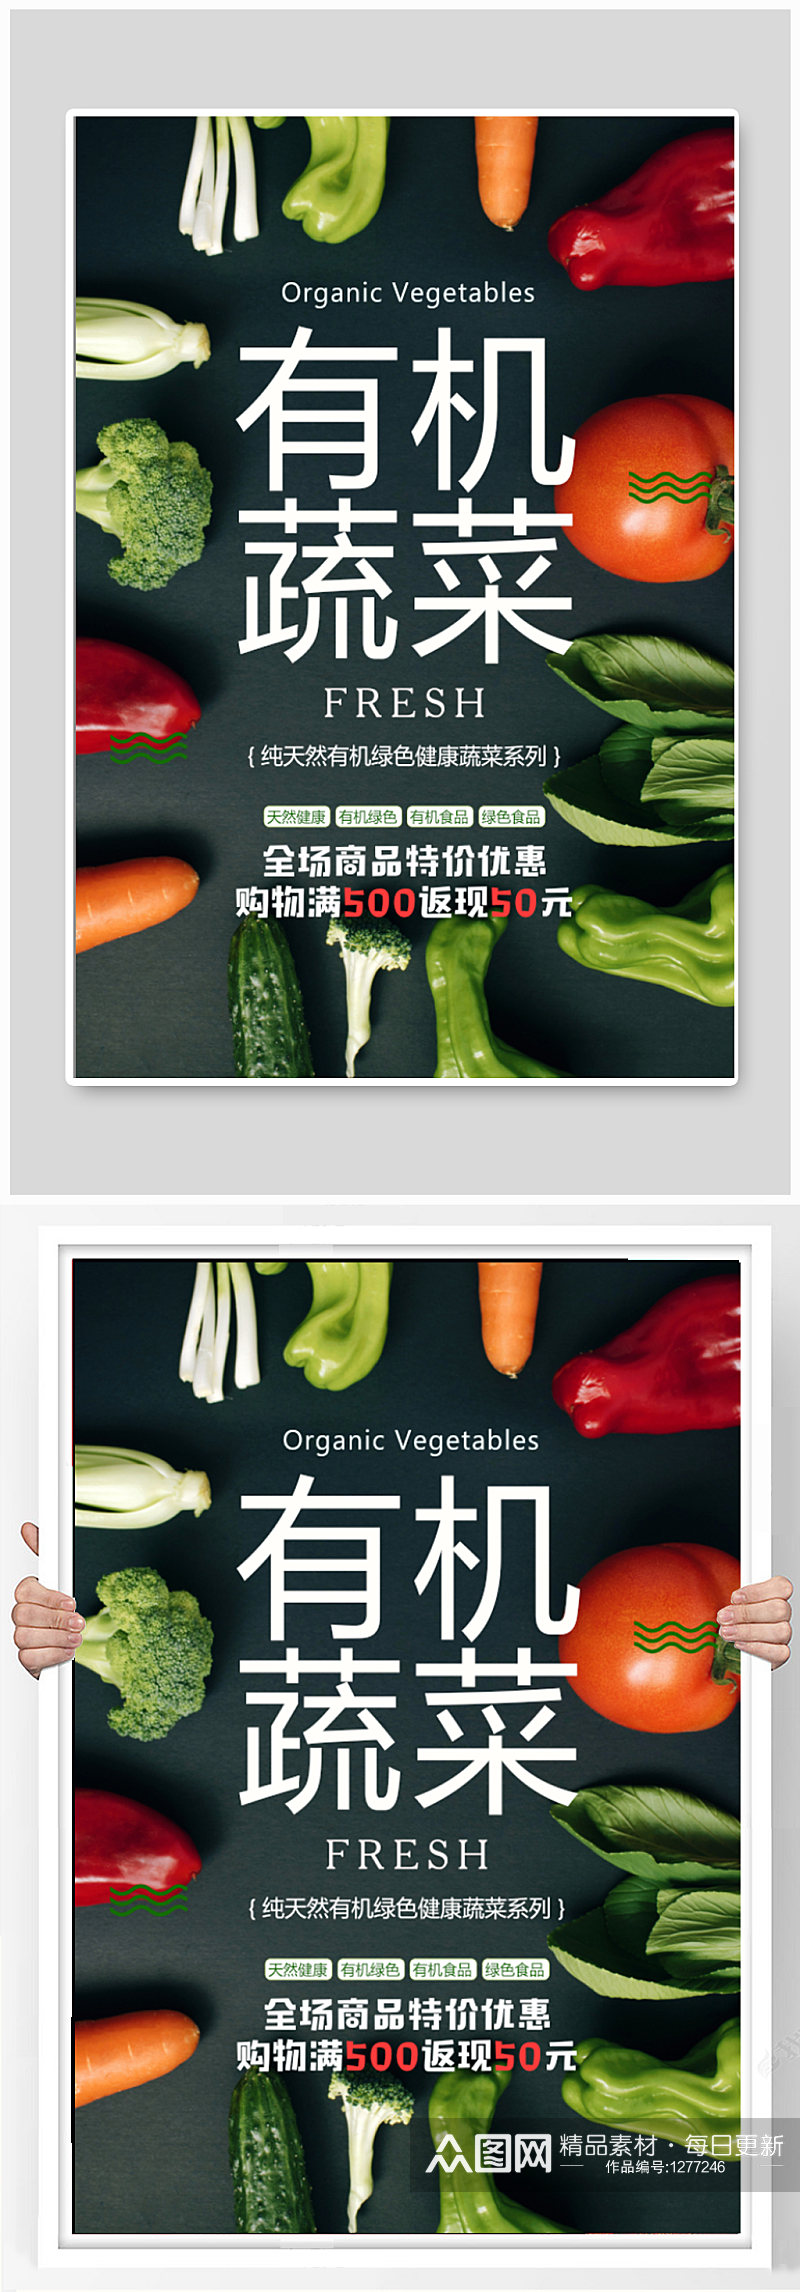 有机蔬菜宣传海报素材